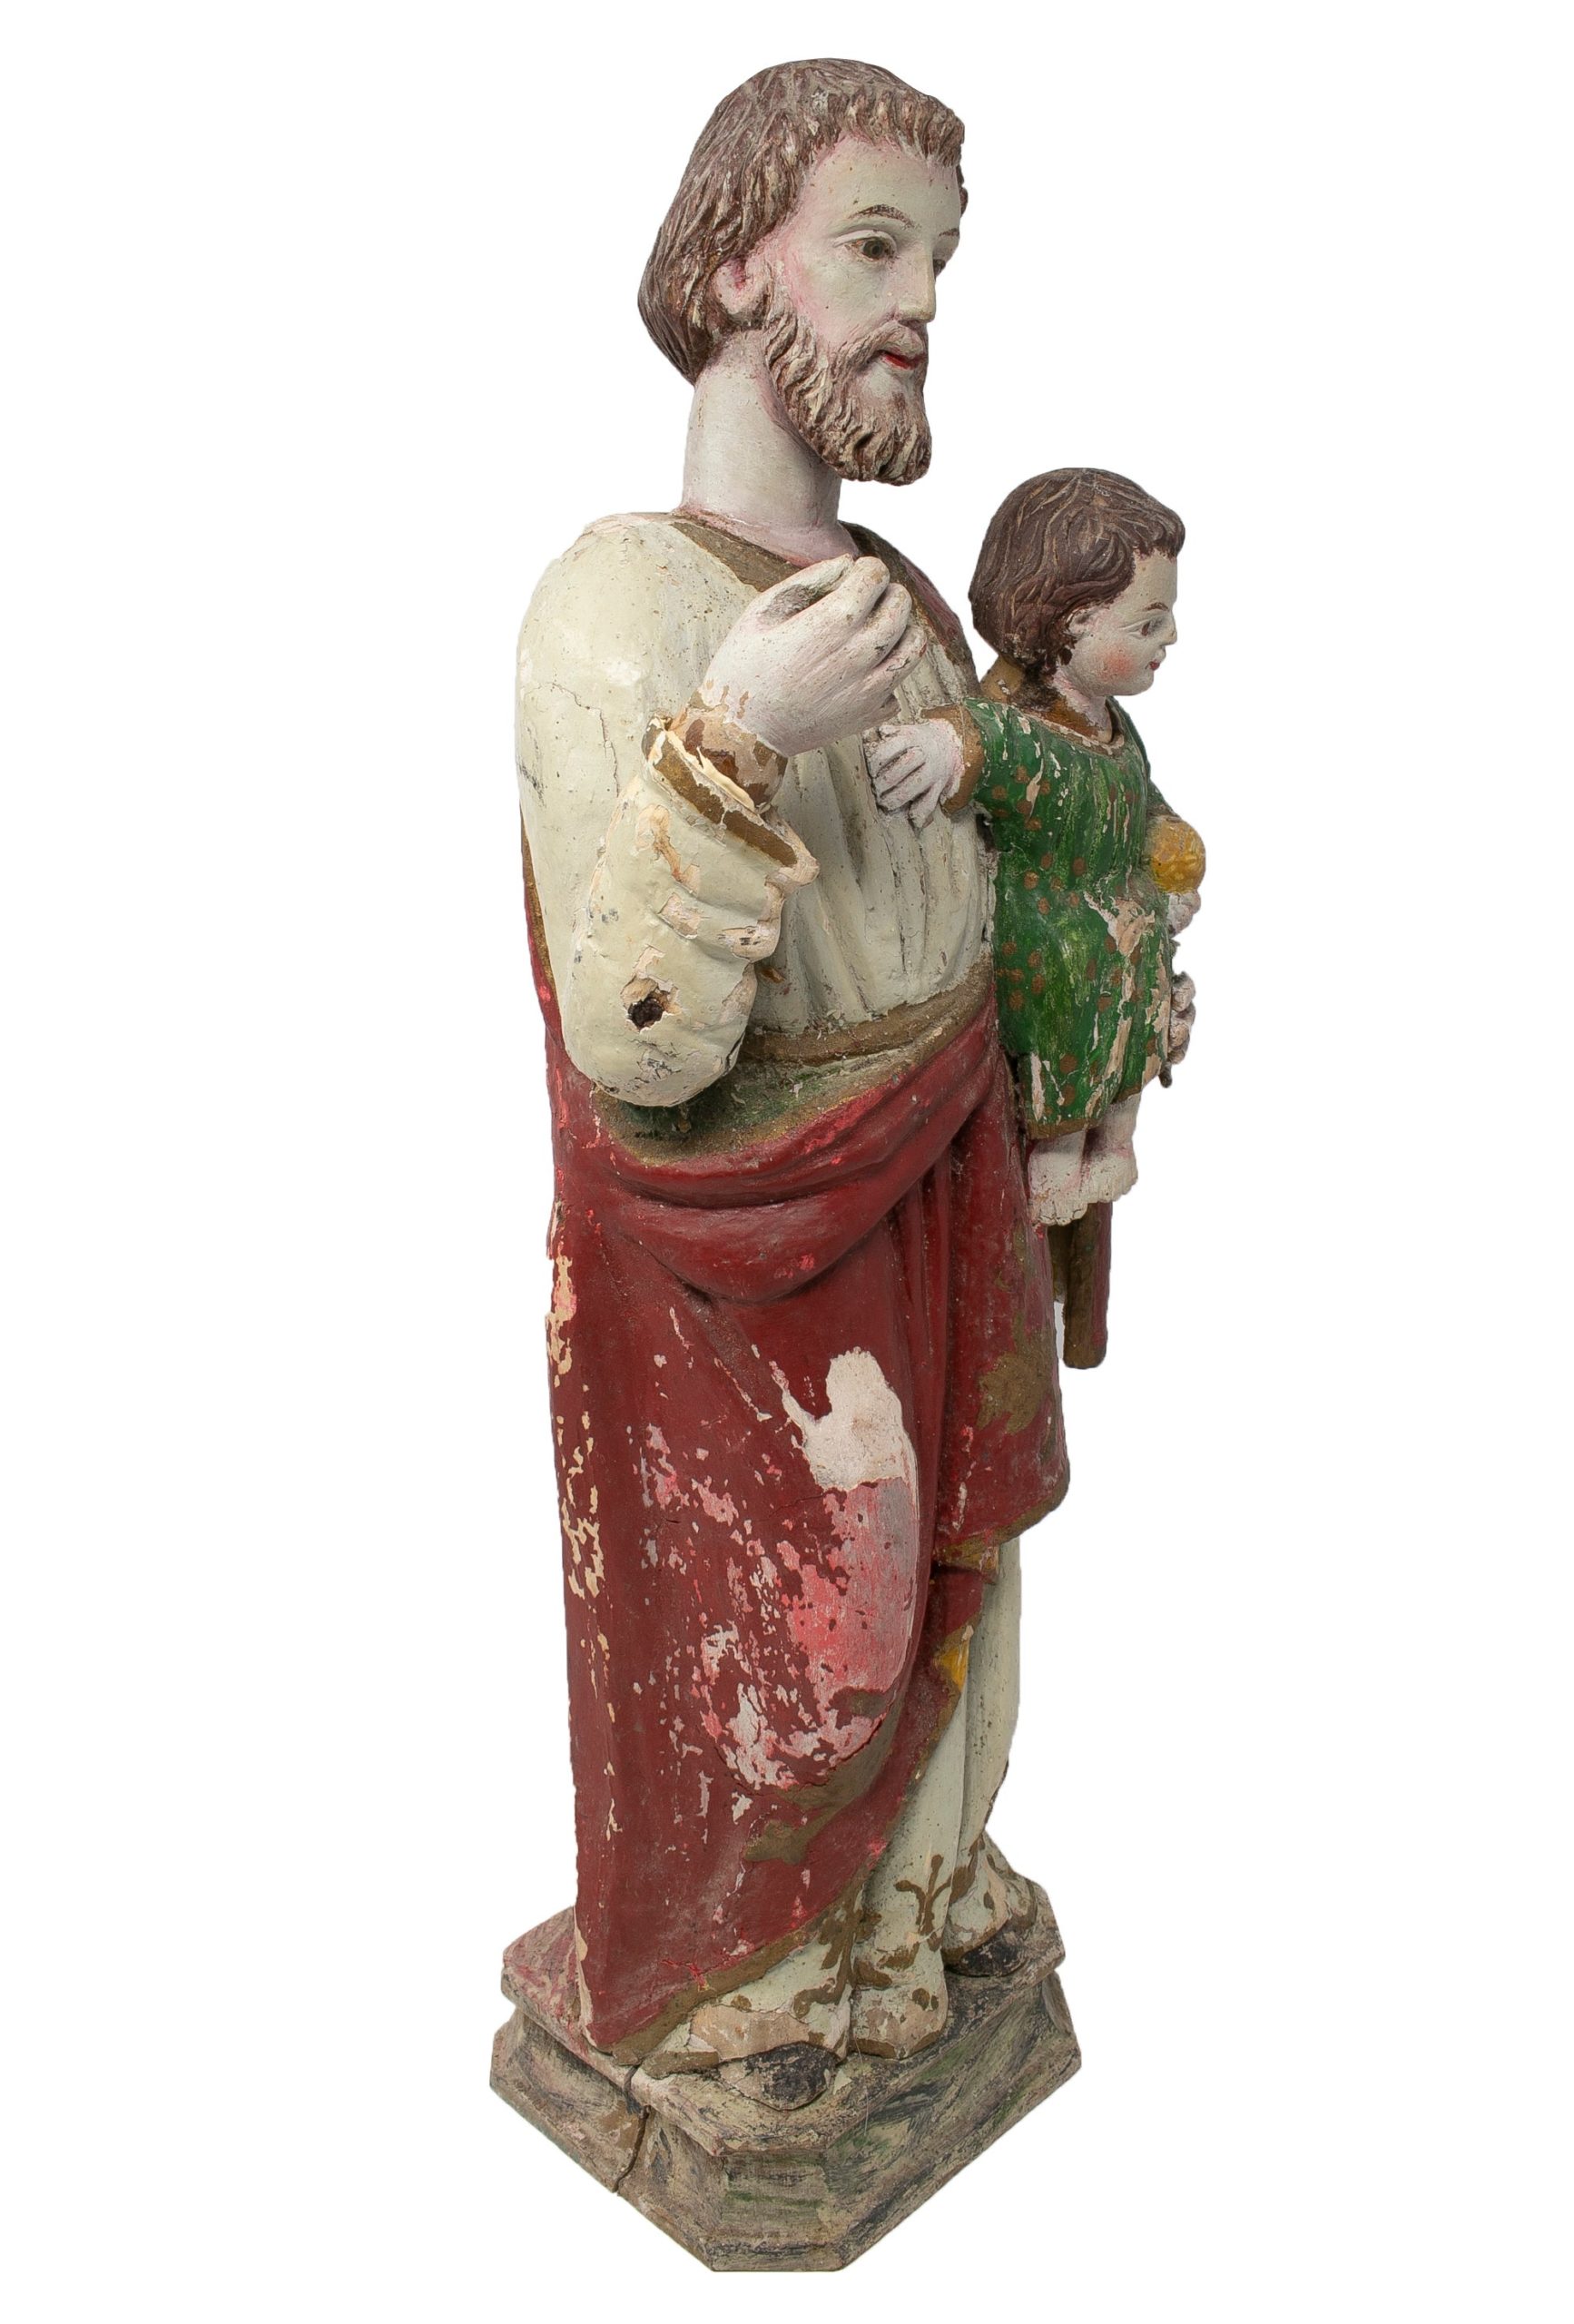 Escultura Figurativa Española de Madera Pintada, de Mediados del Siglo XIX